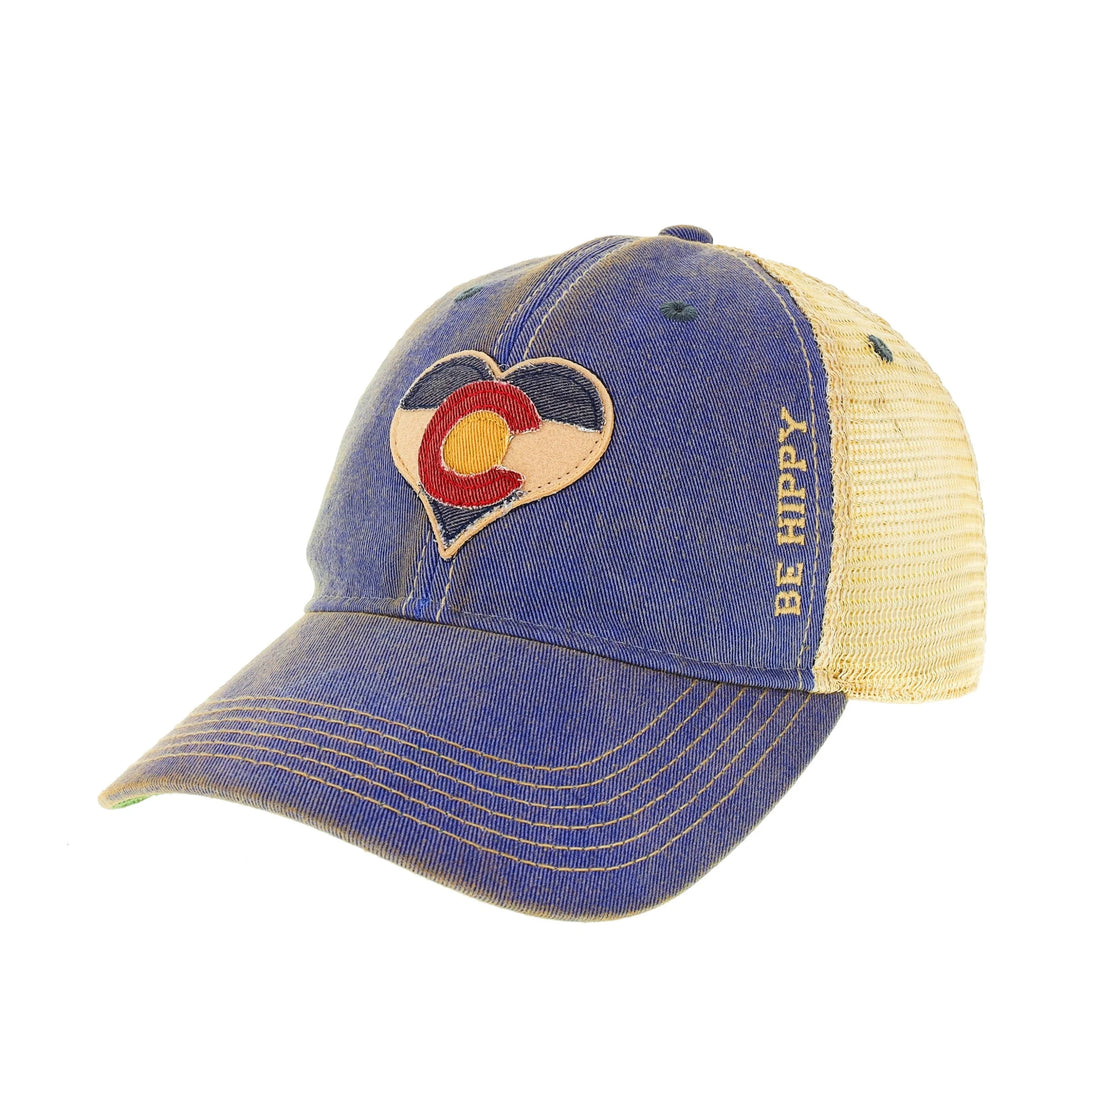 Colorado C Heart Hat